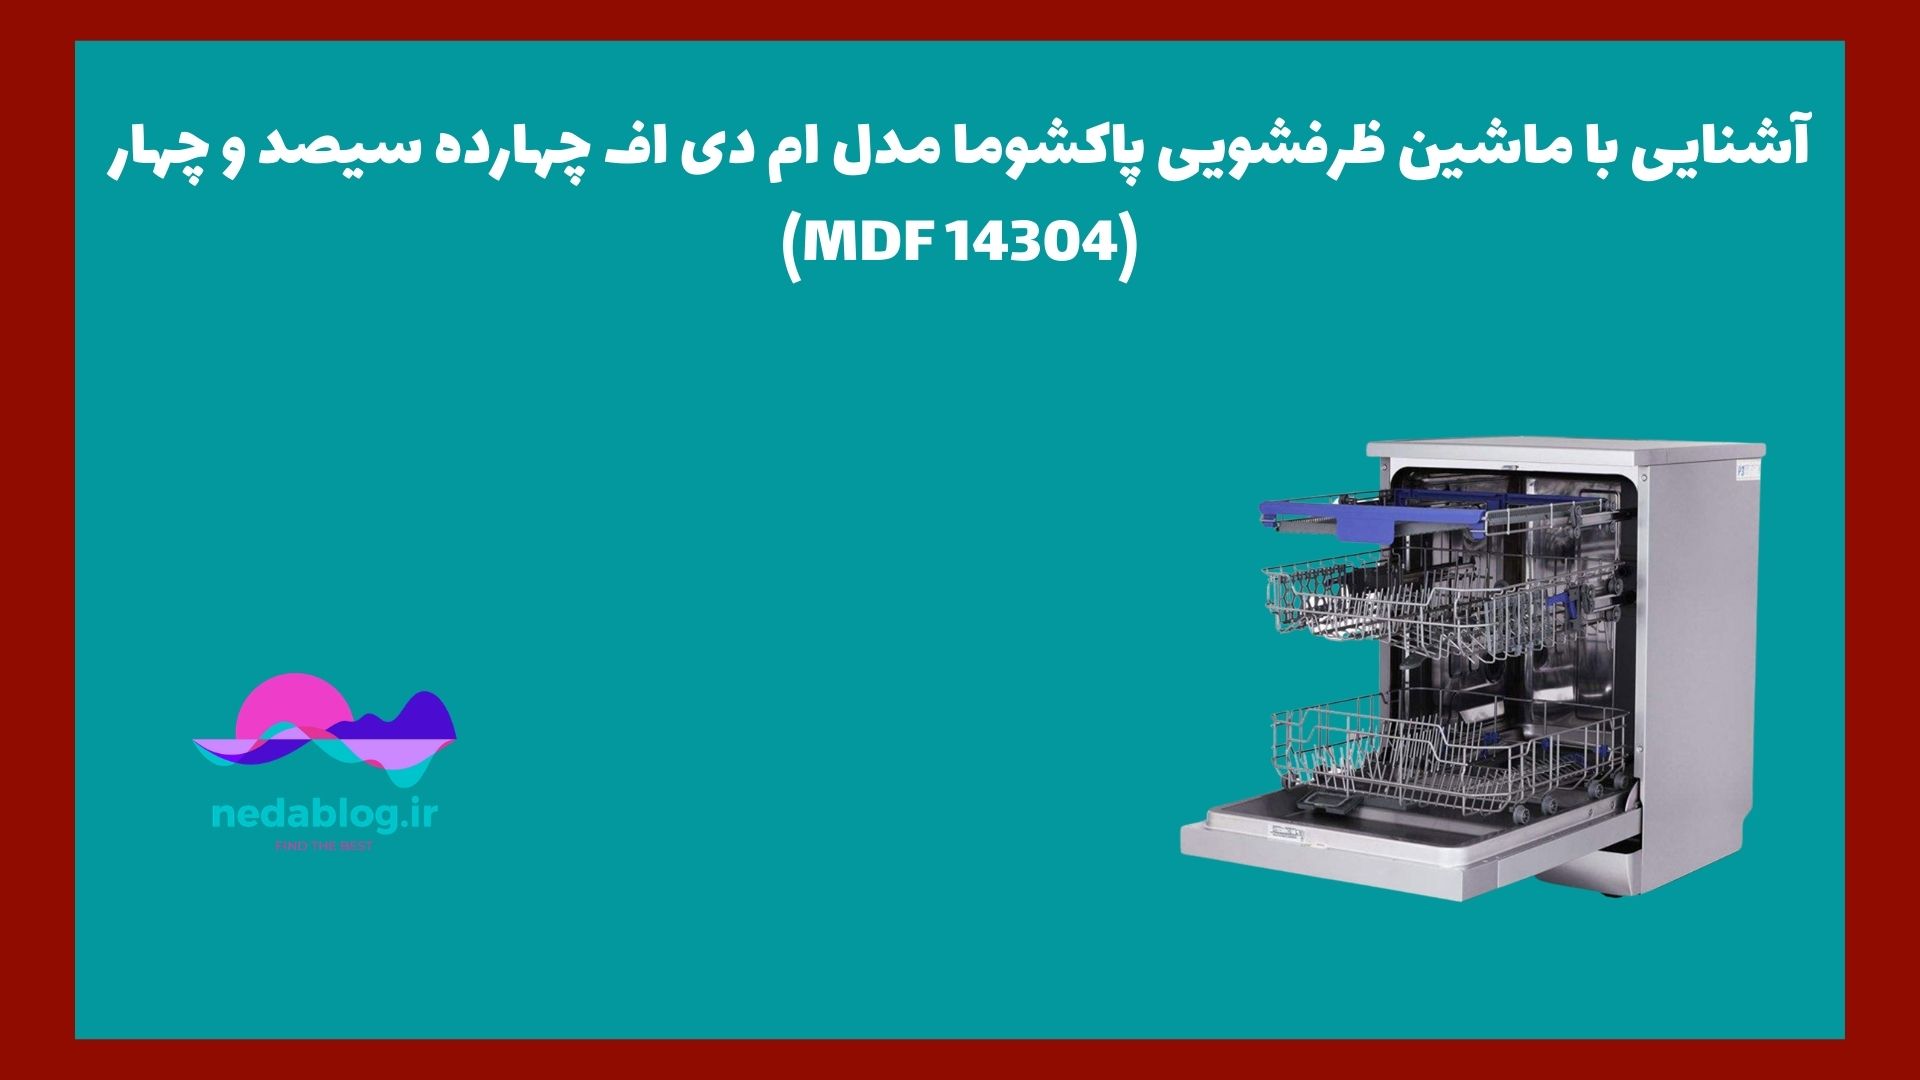 آشنایی با ماشین ظرفشویی پاکشوما مدل ام دی اف چهارده سیصد و چهار (MDF 14304)